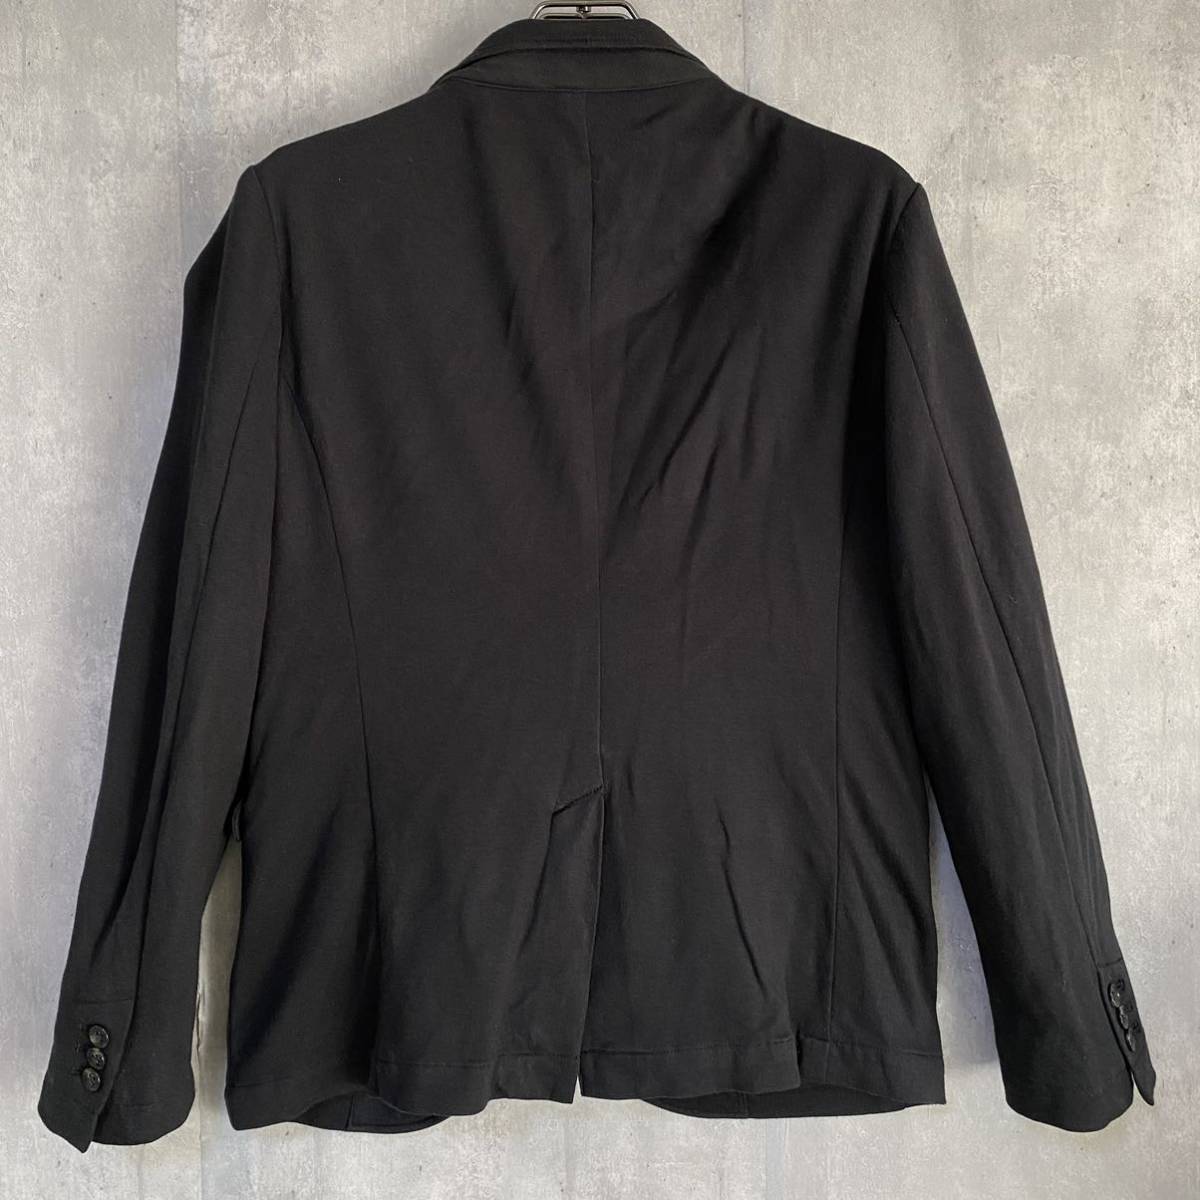  Abahouse ABAHOUSE jacket rayon 48% size 3